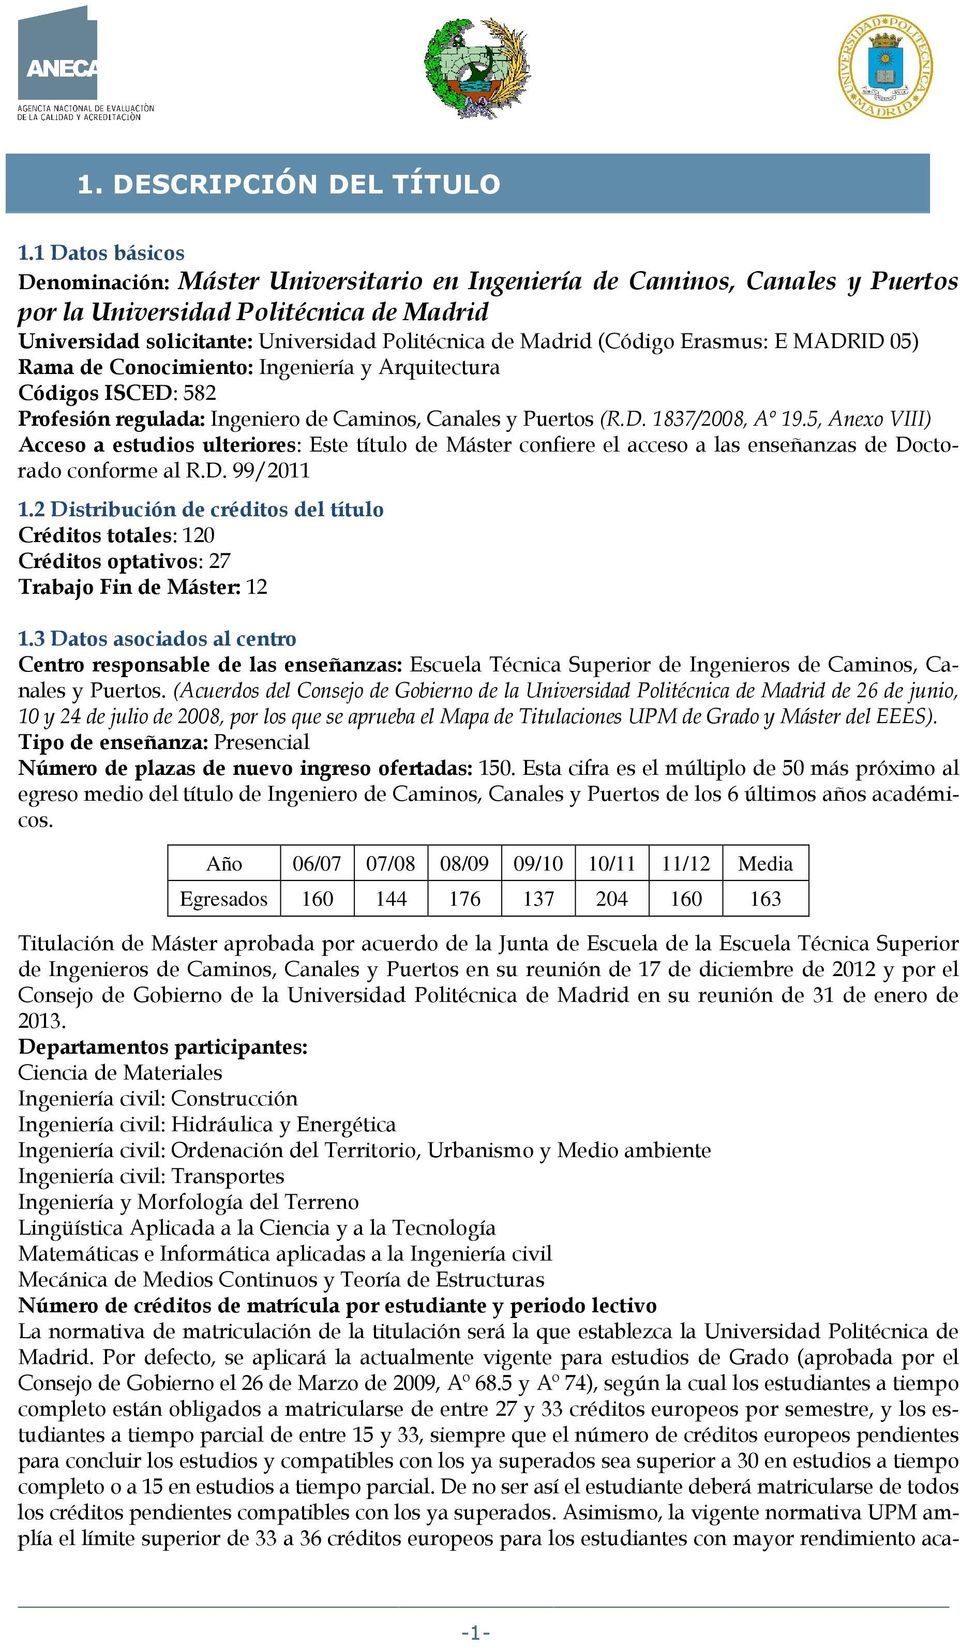 (Código Erasmus: E MADRID 05) Rama de Conocimiento: Ingeniería y Arquitectura Códigos ISCED: 582 Profesión regulada: Ingeniero de Caminos, Canales y Puertos (R.D. 1837/2008, Aº 19.